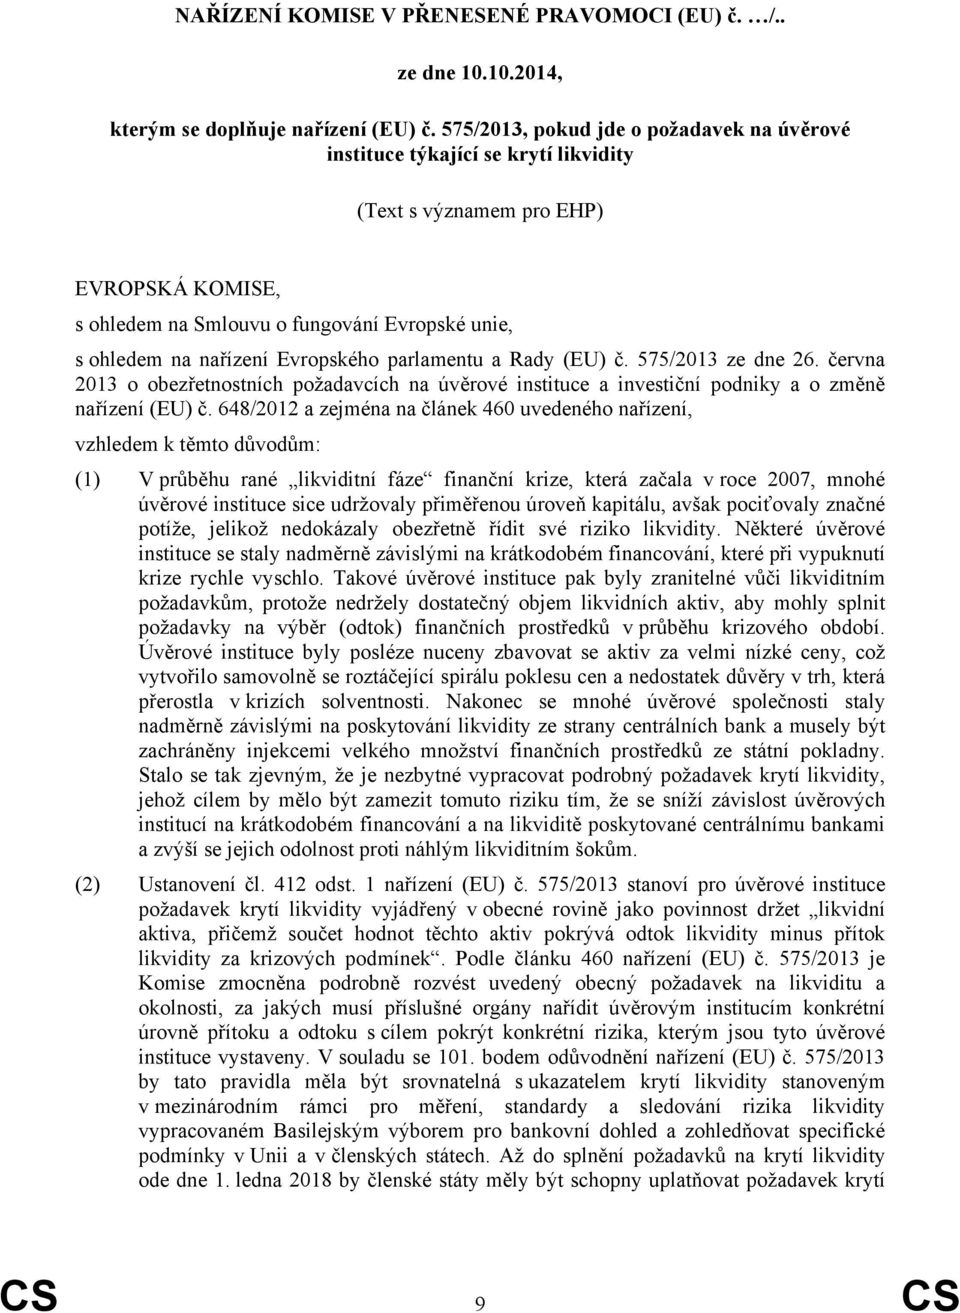 Evropského parlamentu a Rady (EU) č. 575/2013 ze dne 26. června 2013 o obezřetnostních požadavcích na úvěrové instituce a investiční podniky a o změně nařízení (EU) č.